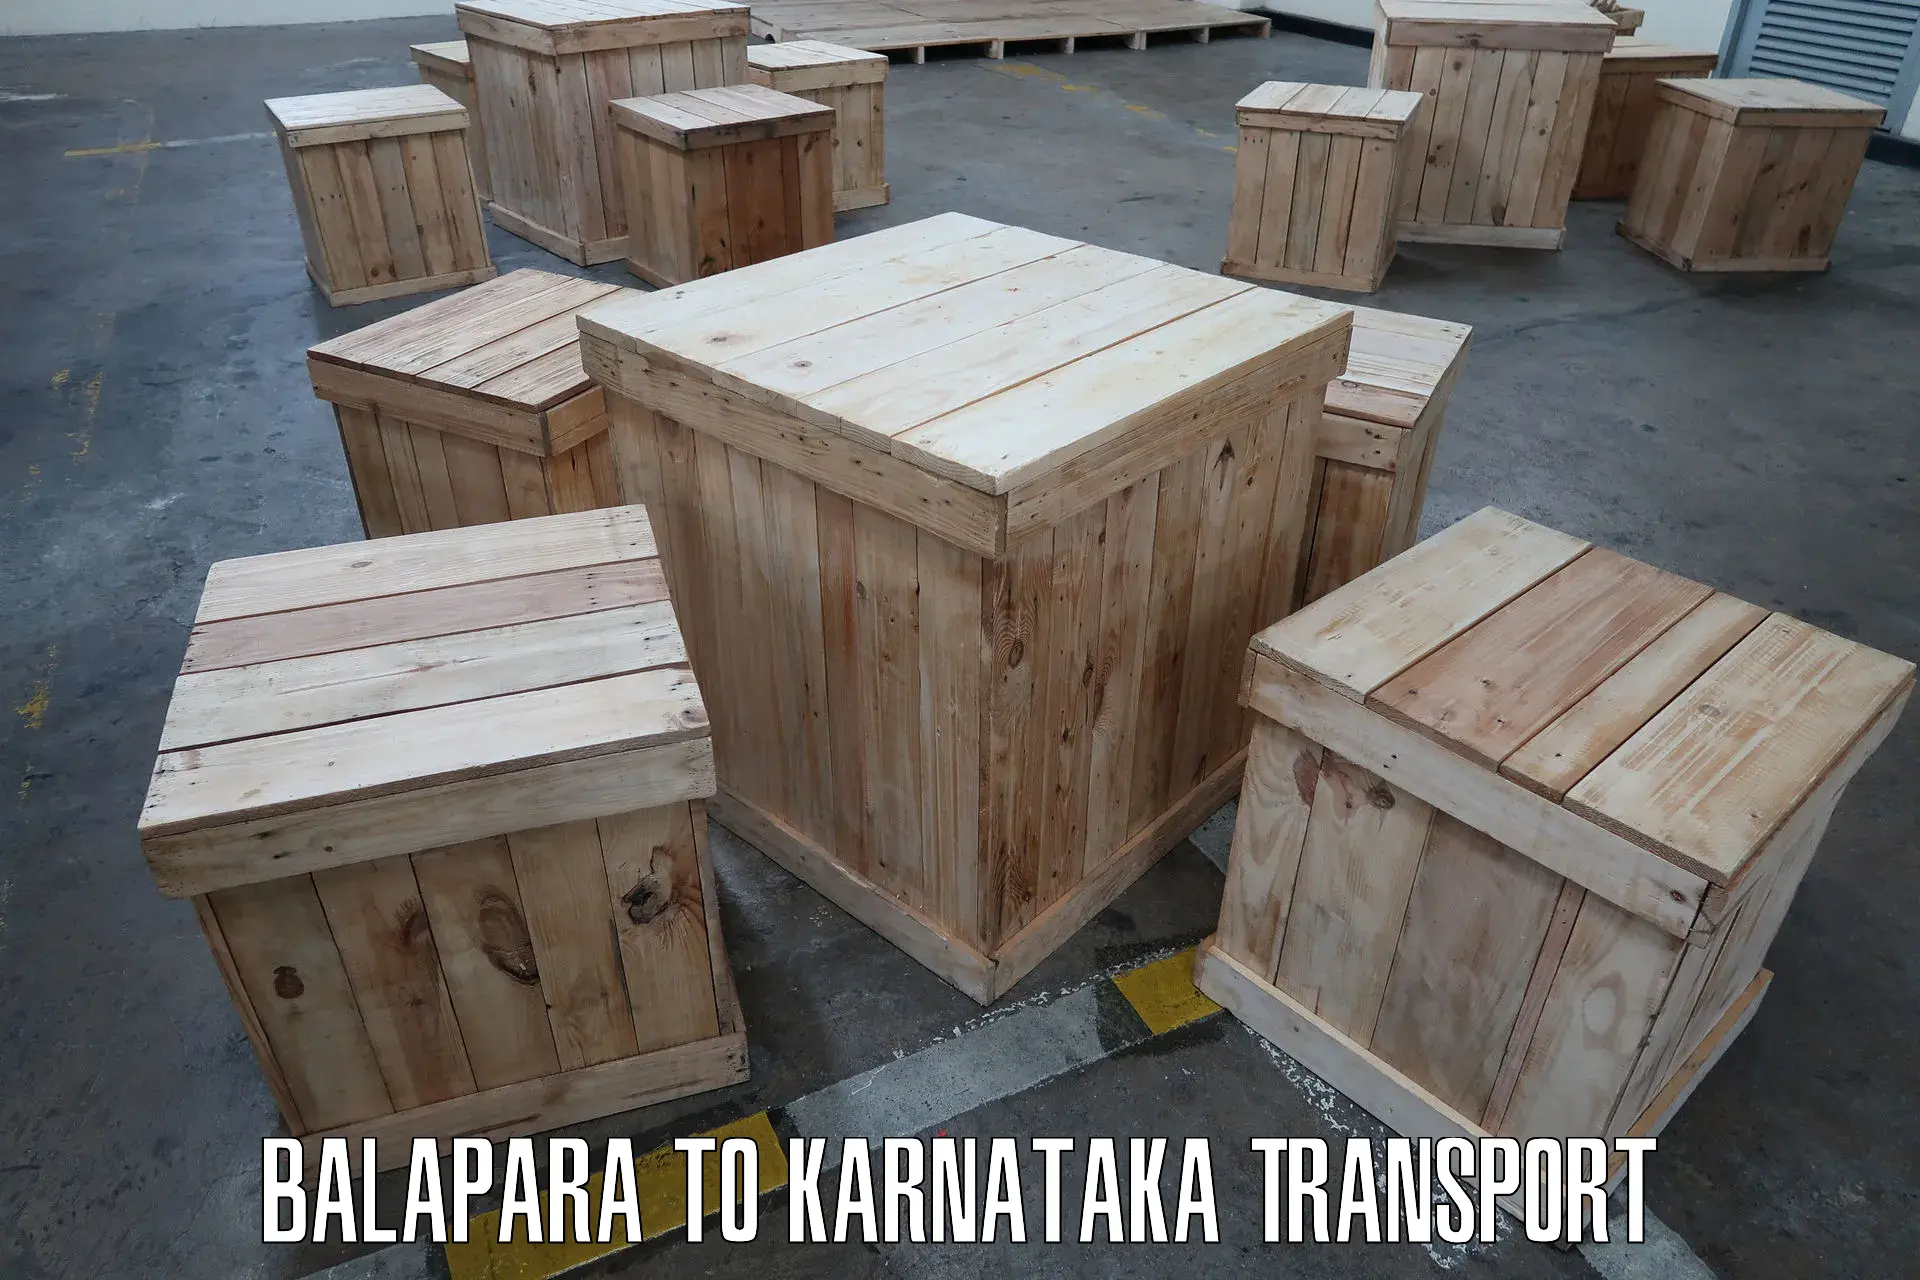 Transport in sharing Balapara to Mandya